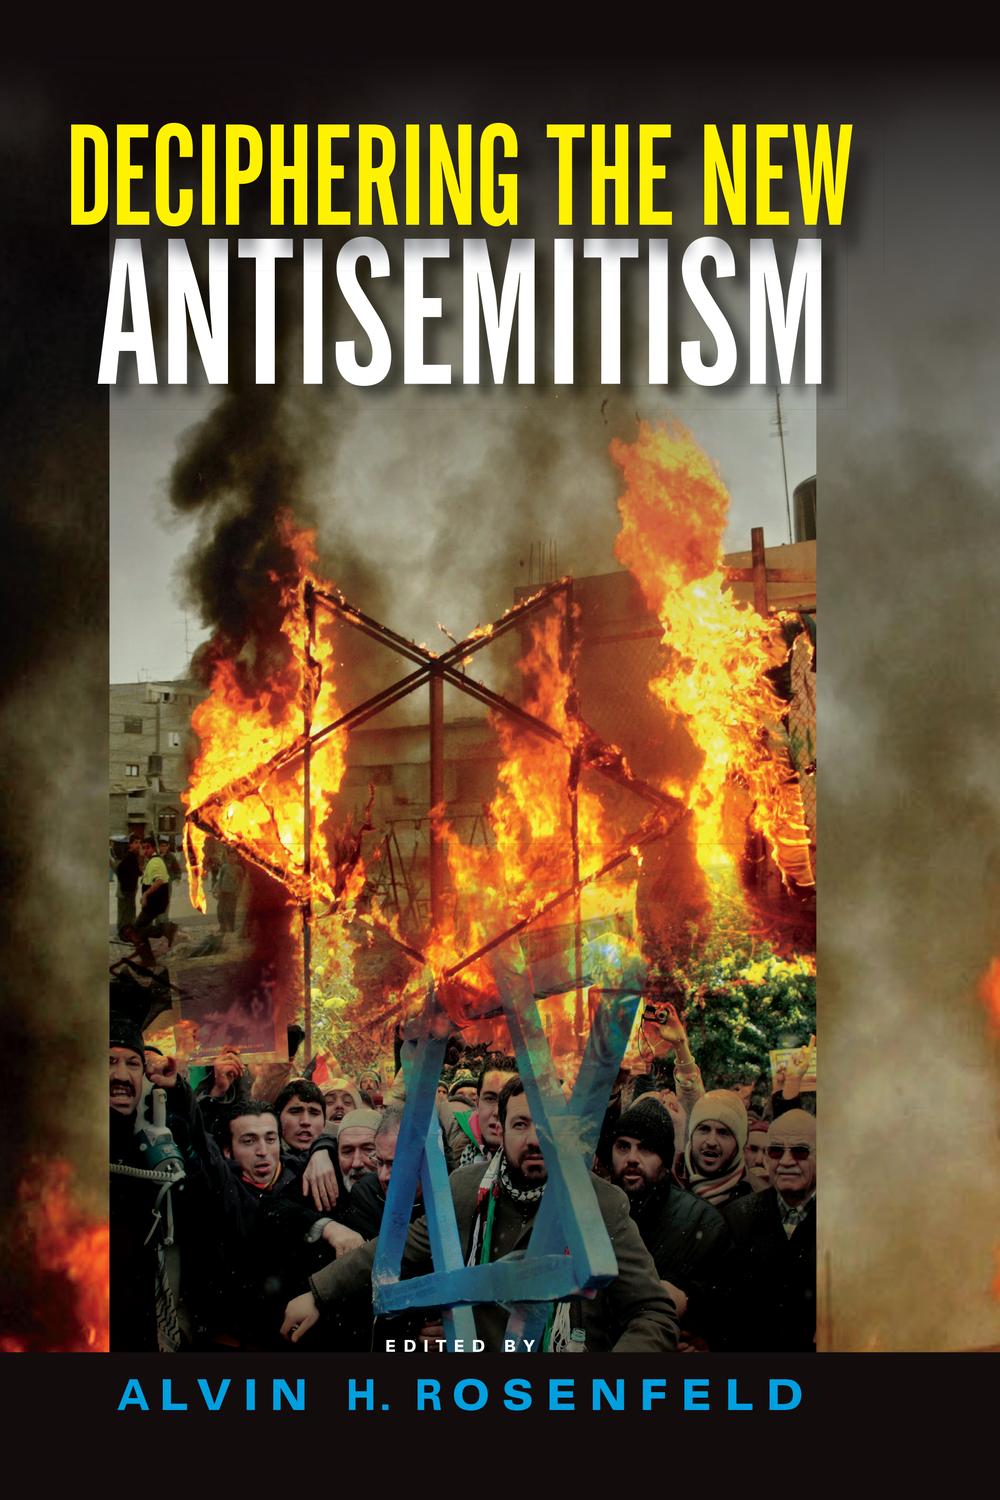 Deciphering the New Antisemitism - Alvin H. Rosenfeld